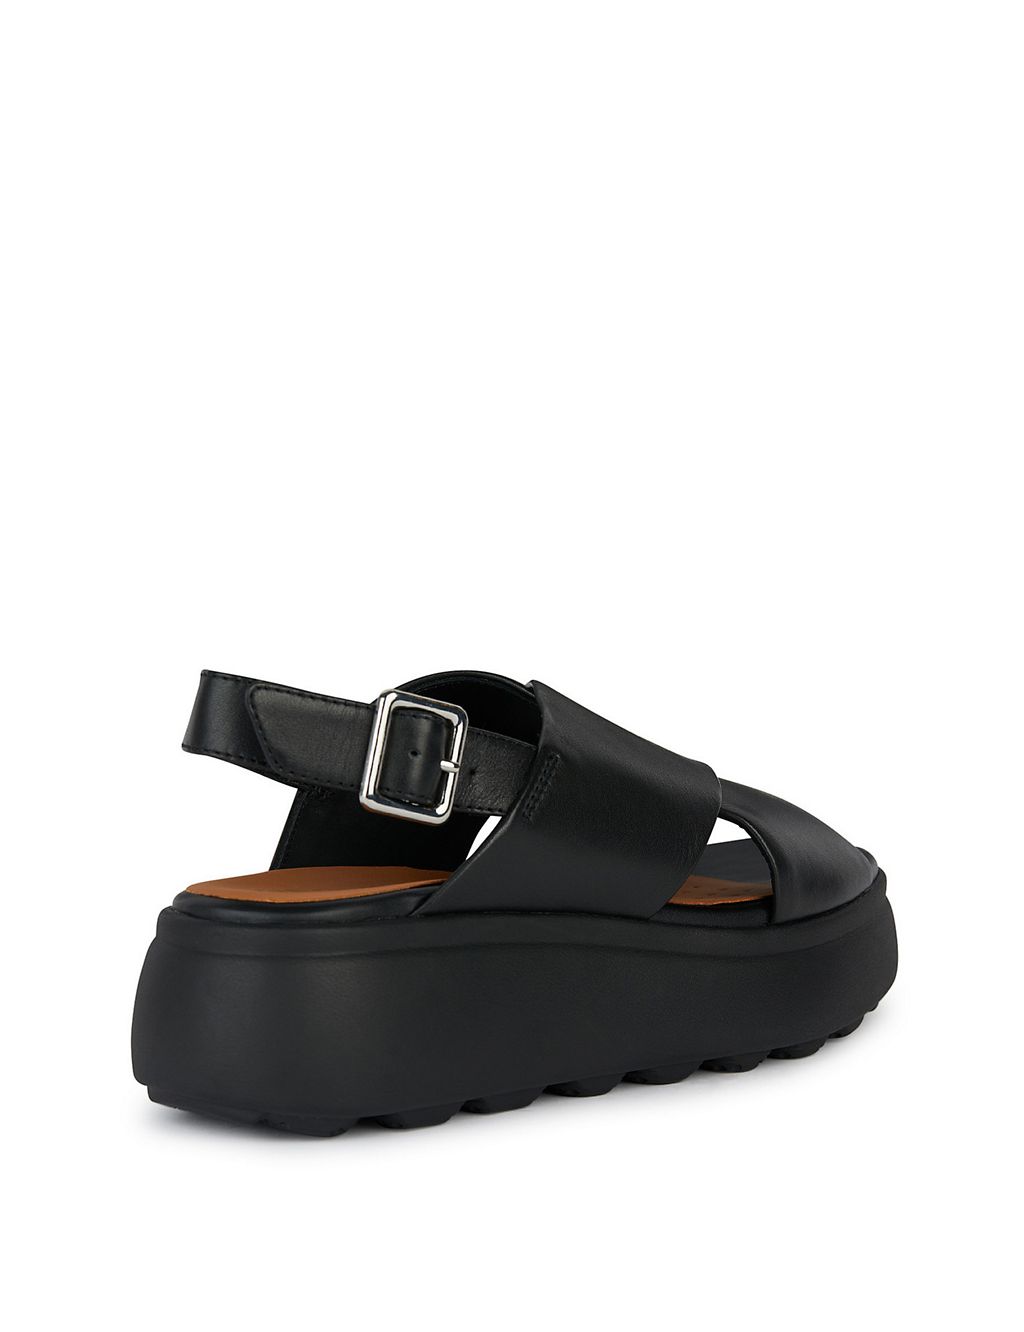 Leather Ankle Strap Flatform Sandals 2 of 5